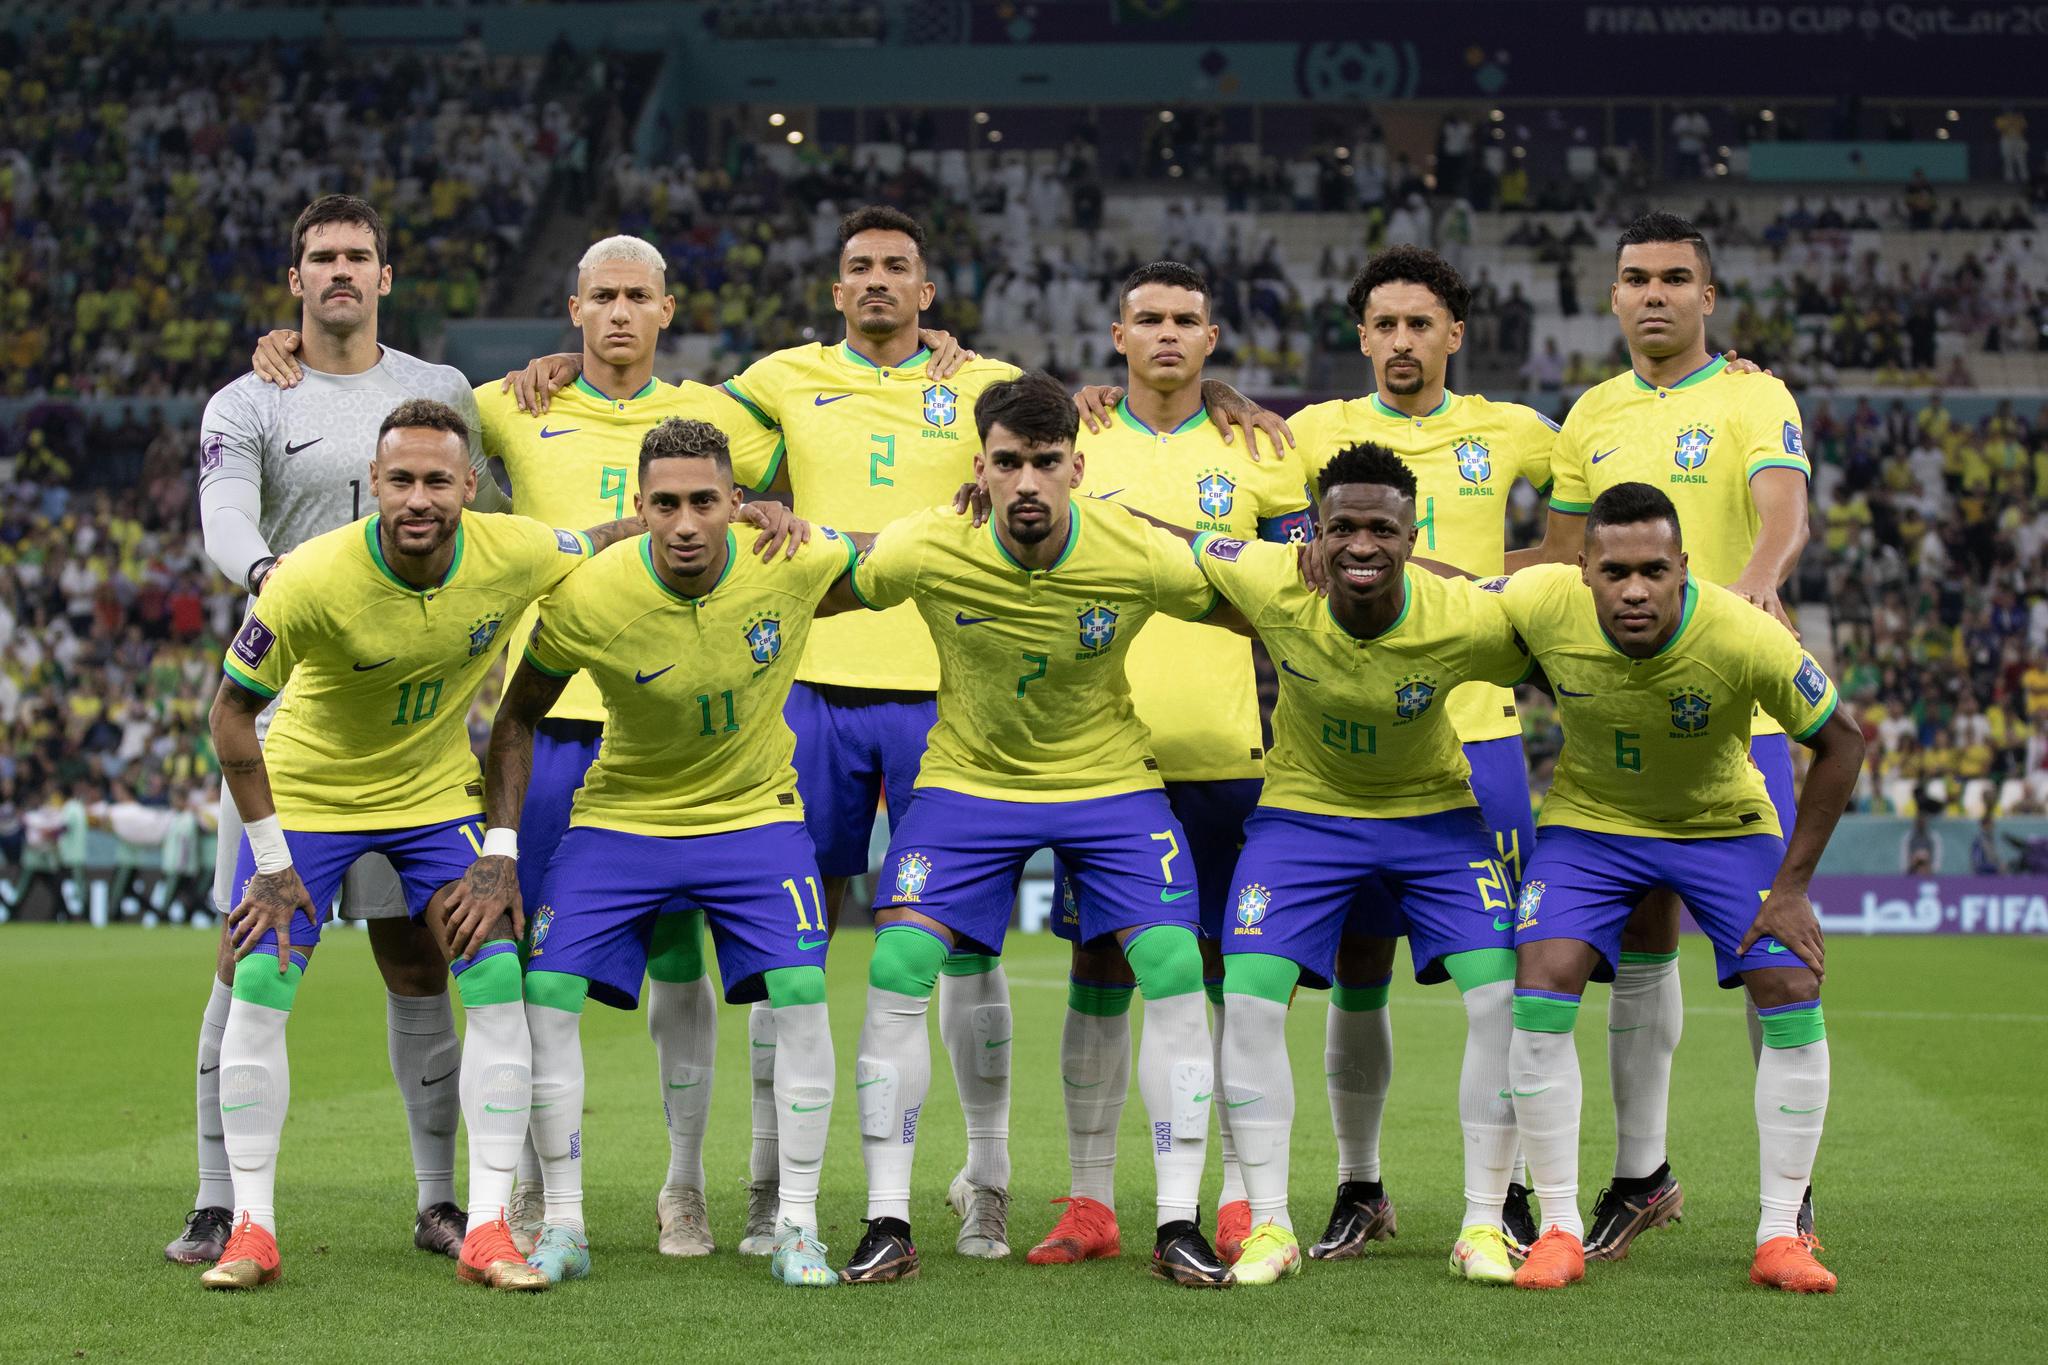 Seleção brasileira jogará toda de verde em ação na Arena da